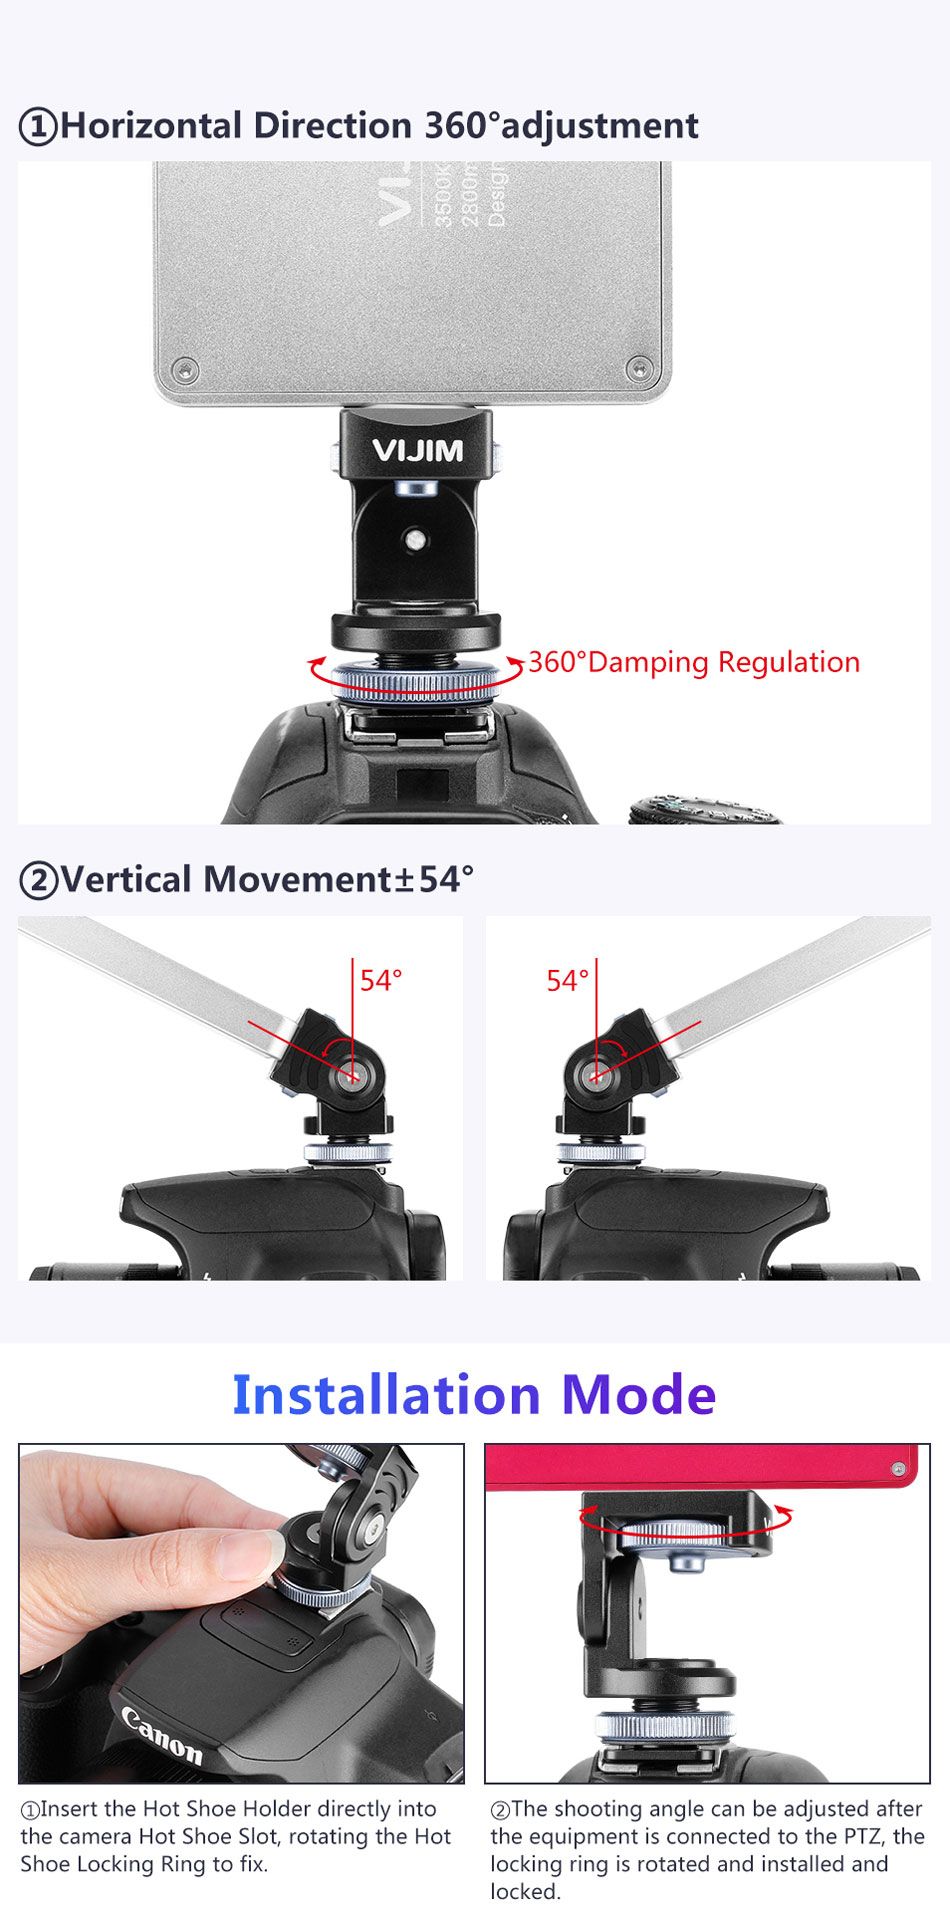 VIJIM-VK-2-360-Degree-Rotation-Hot-Shoe-Cold-Shoe-Mount-Bracket-Holder-for-DSLR-Camera-1453763